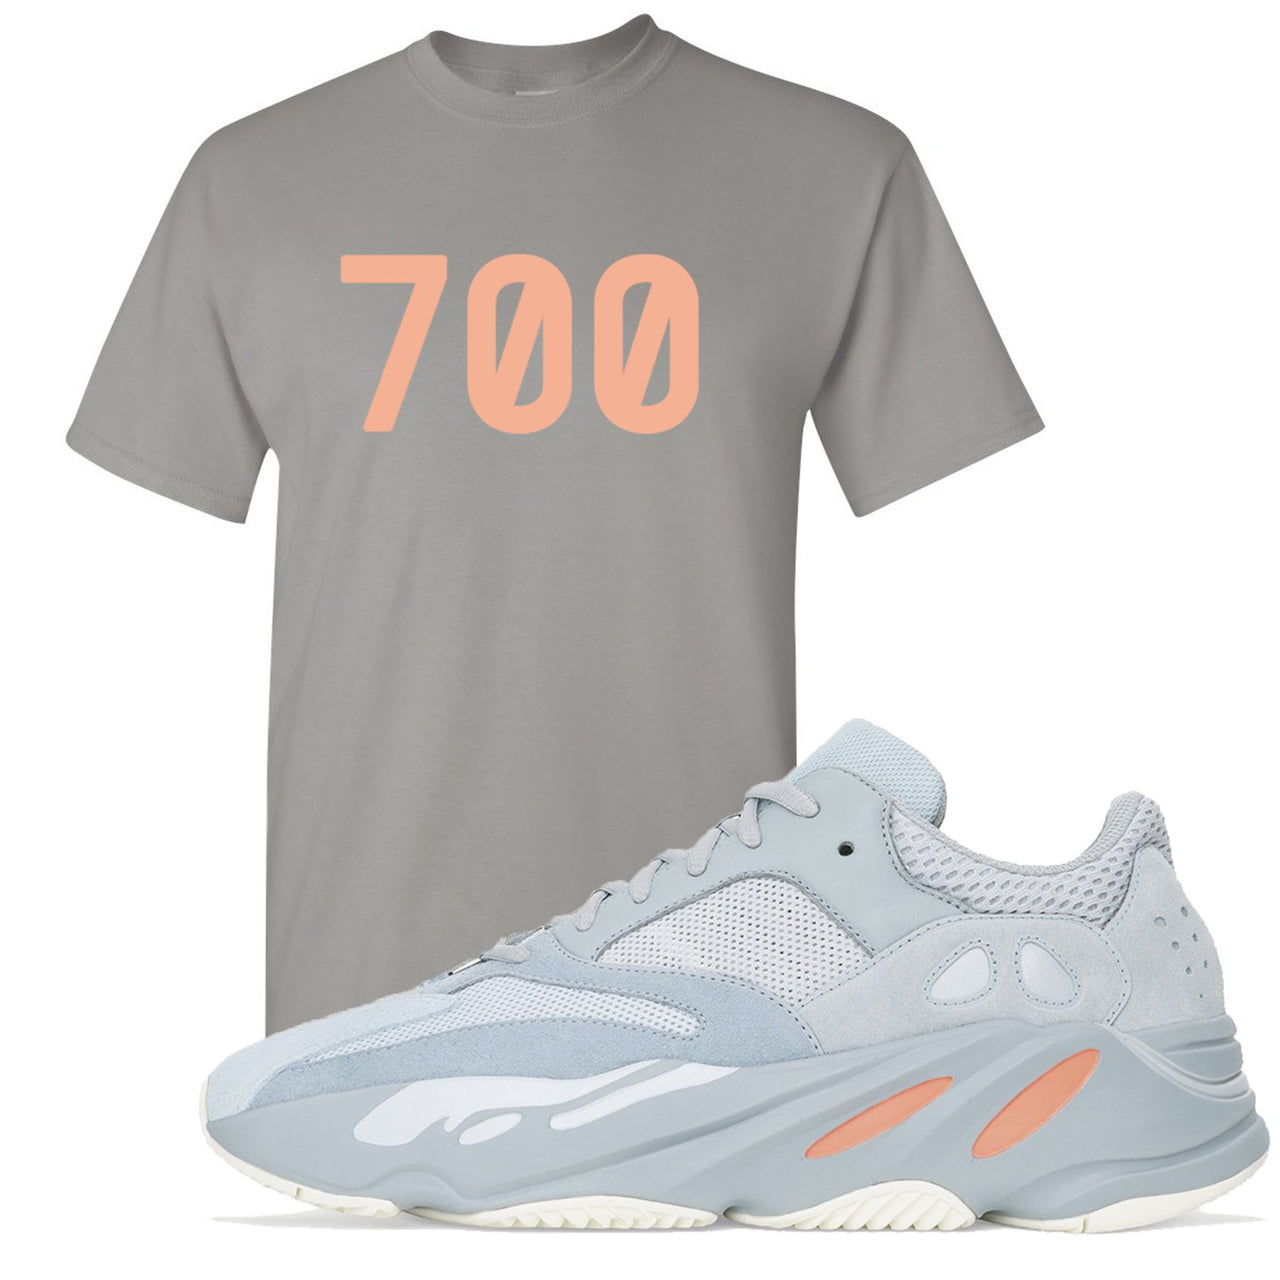 Inertia 700s T Shirt | 700, Light Gray